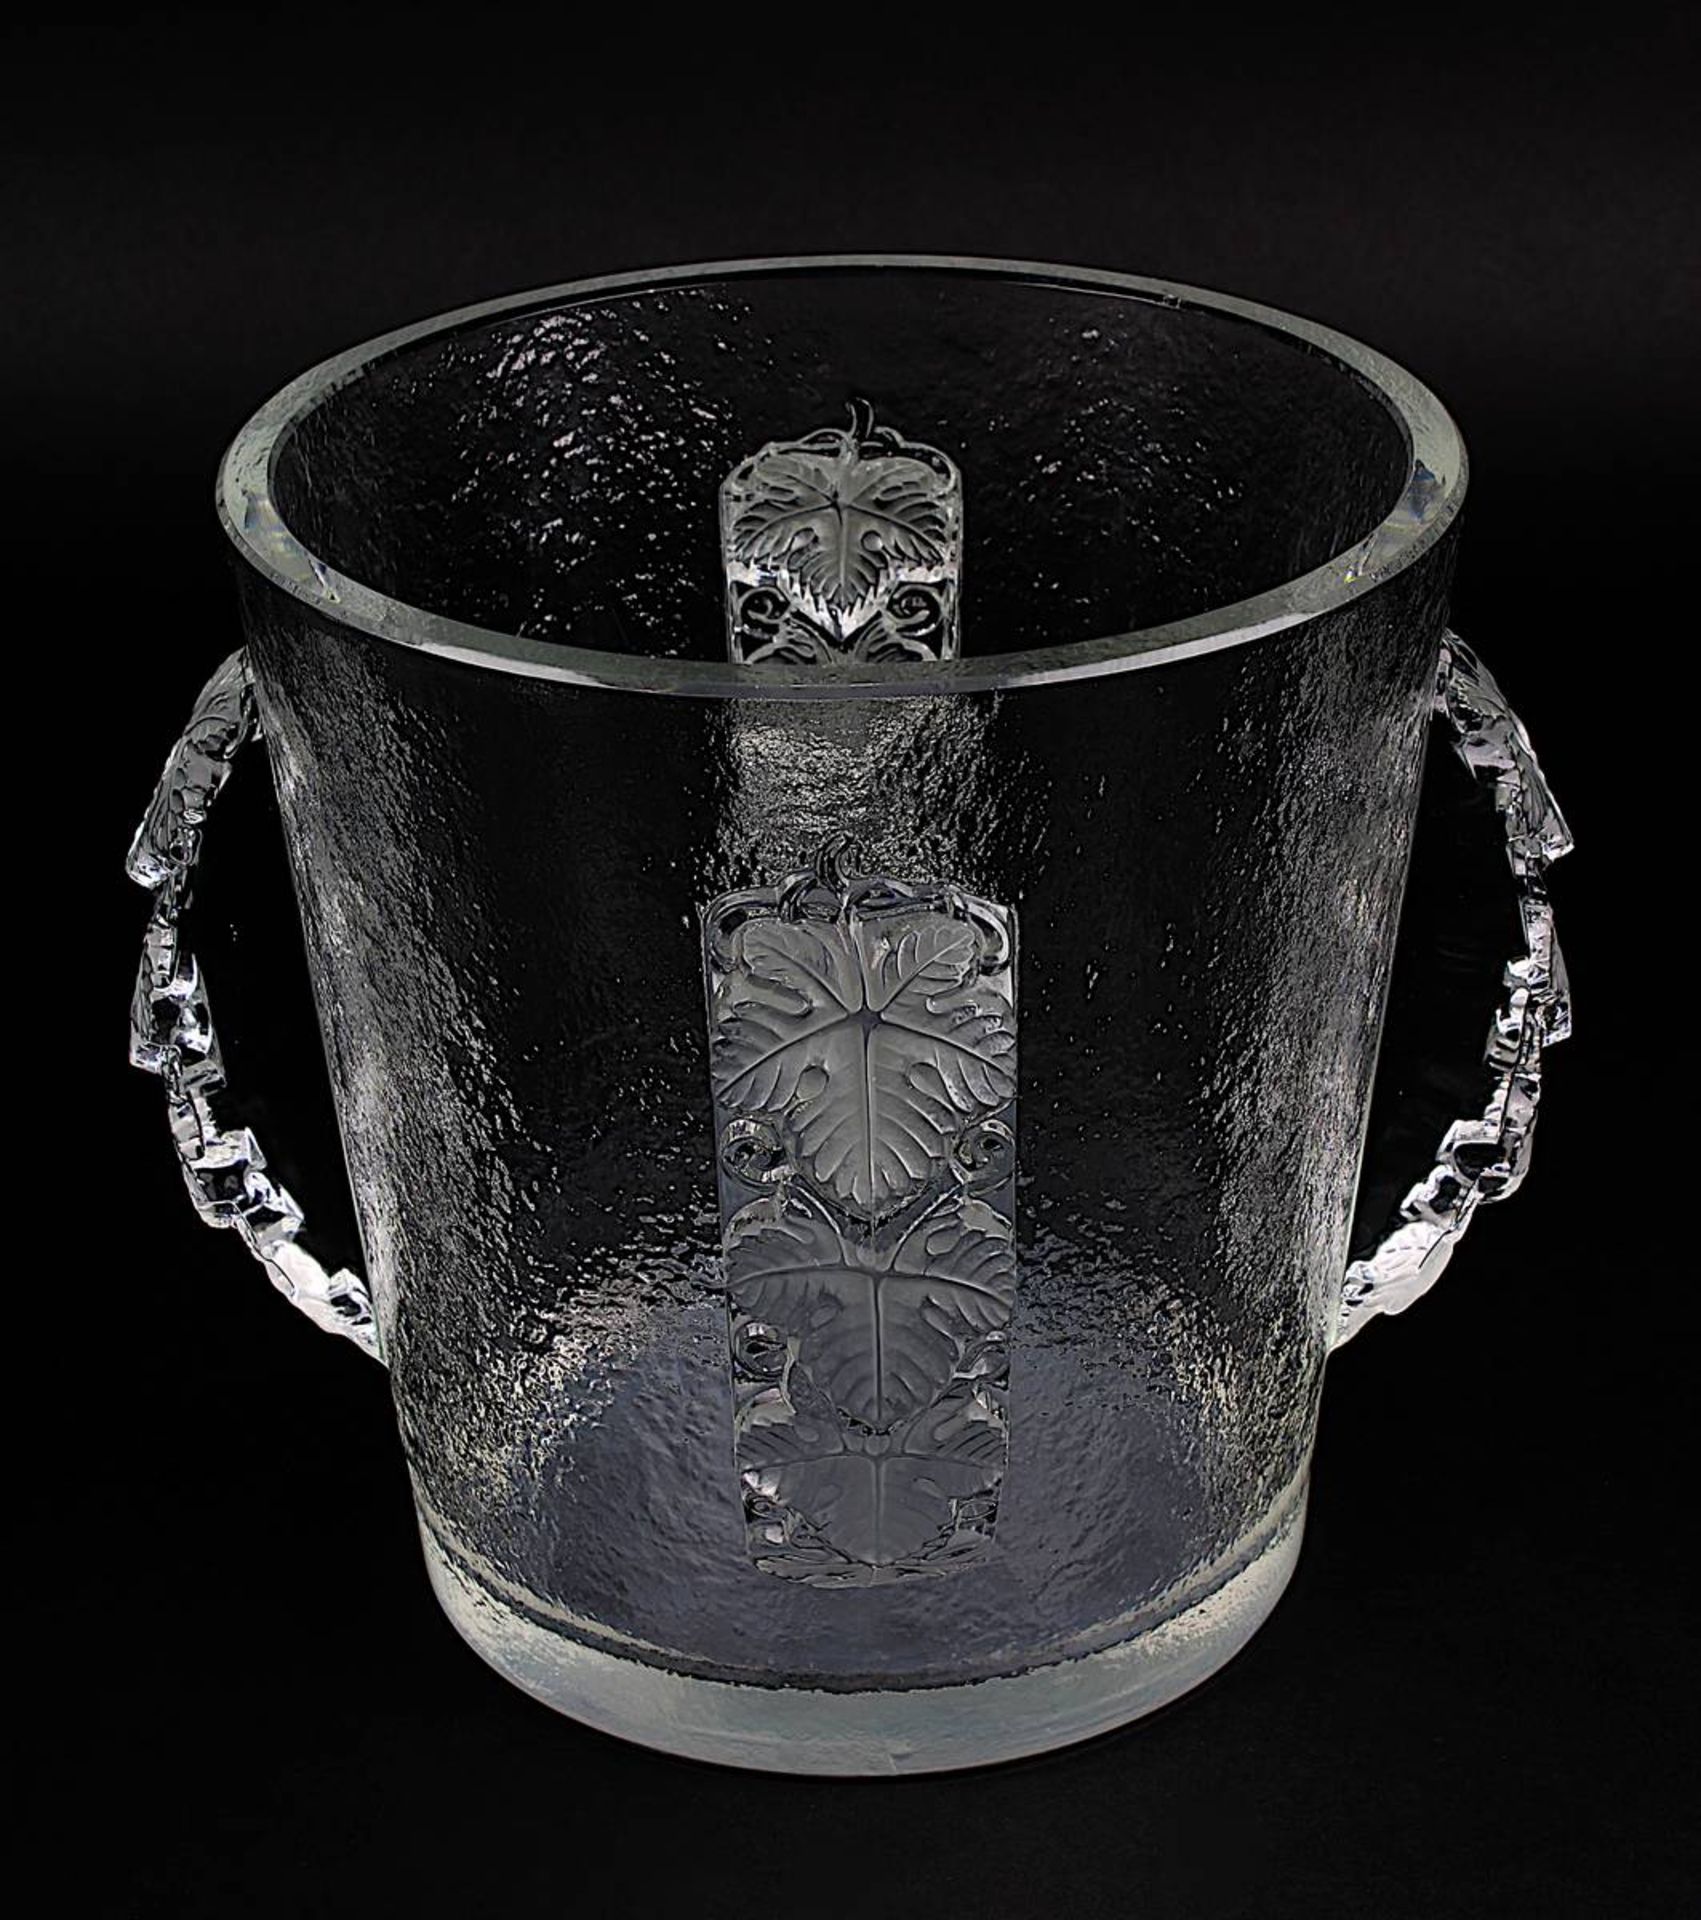 Lalique Champagnerkühler Epernay, 2. H. 20. Jh., Entwurf 1938, klares Kristallglas, Weinblätter